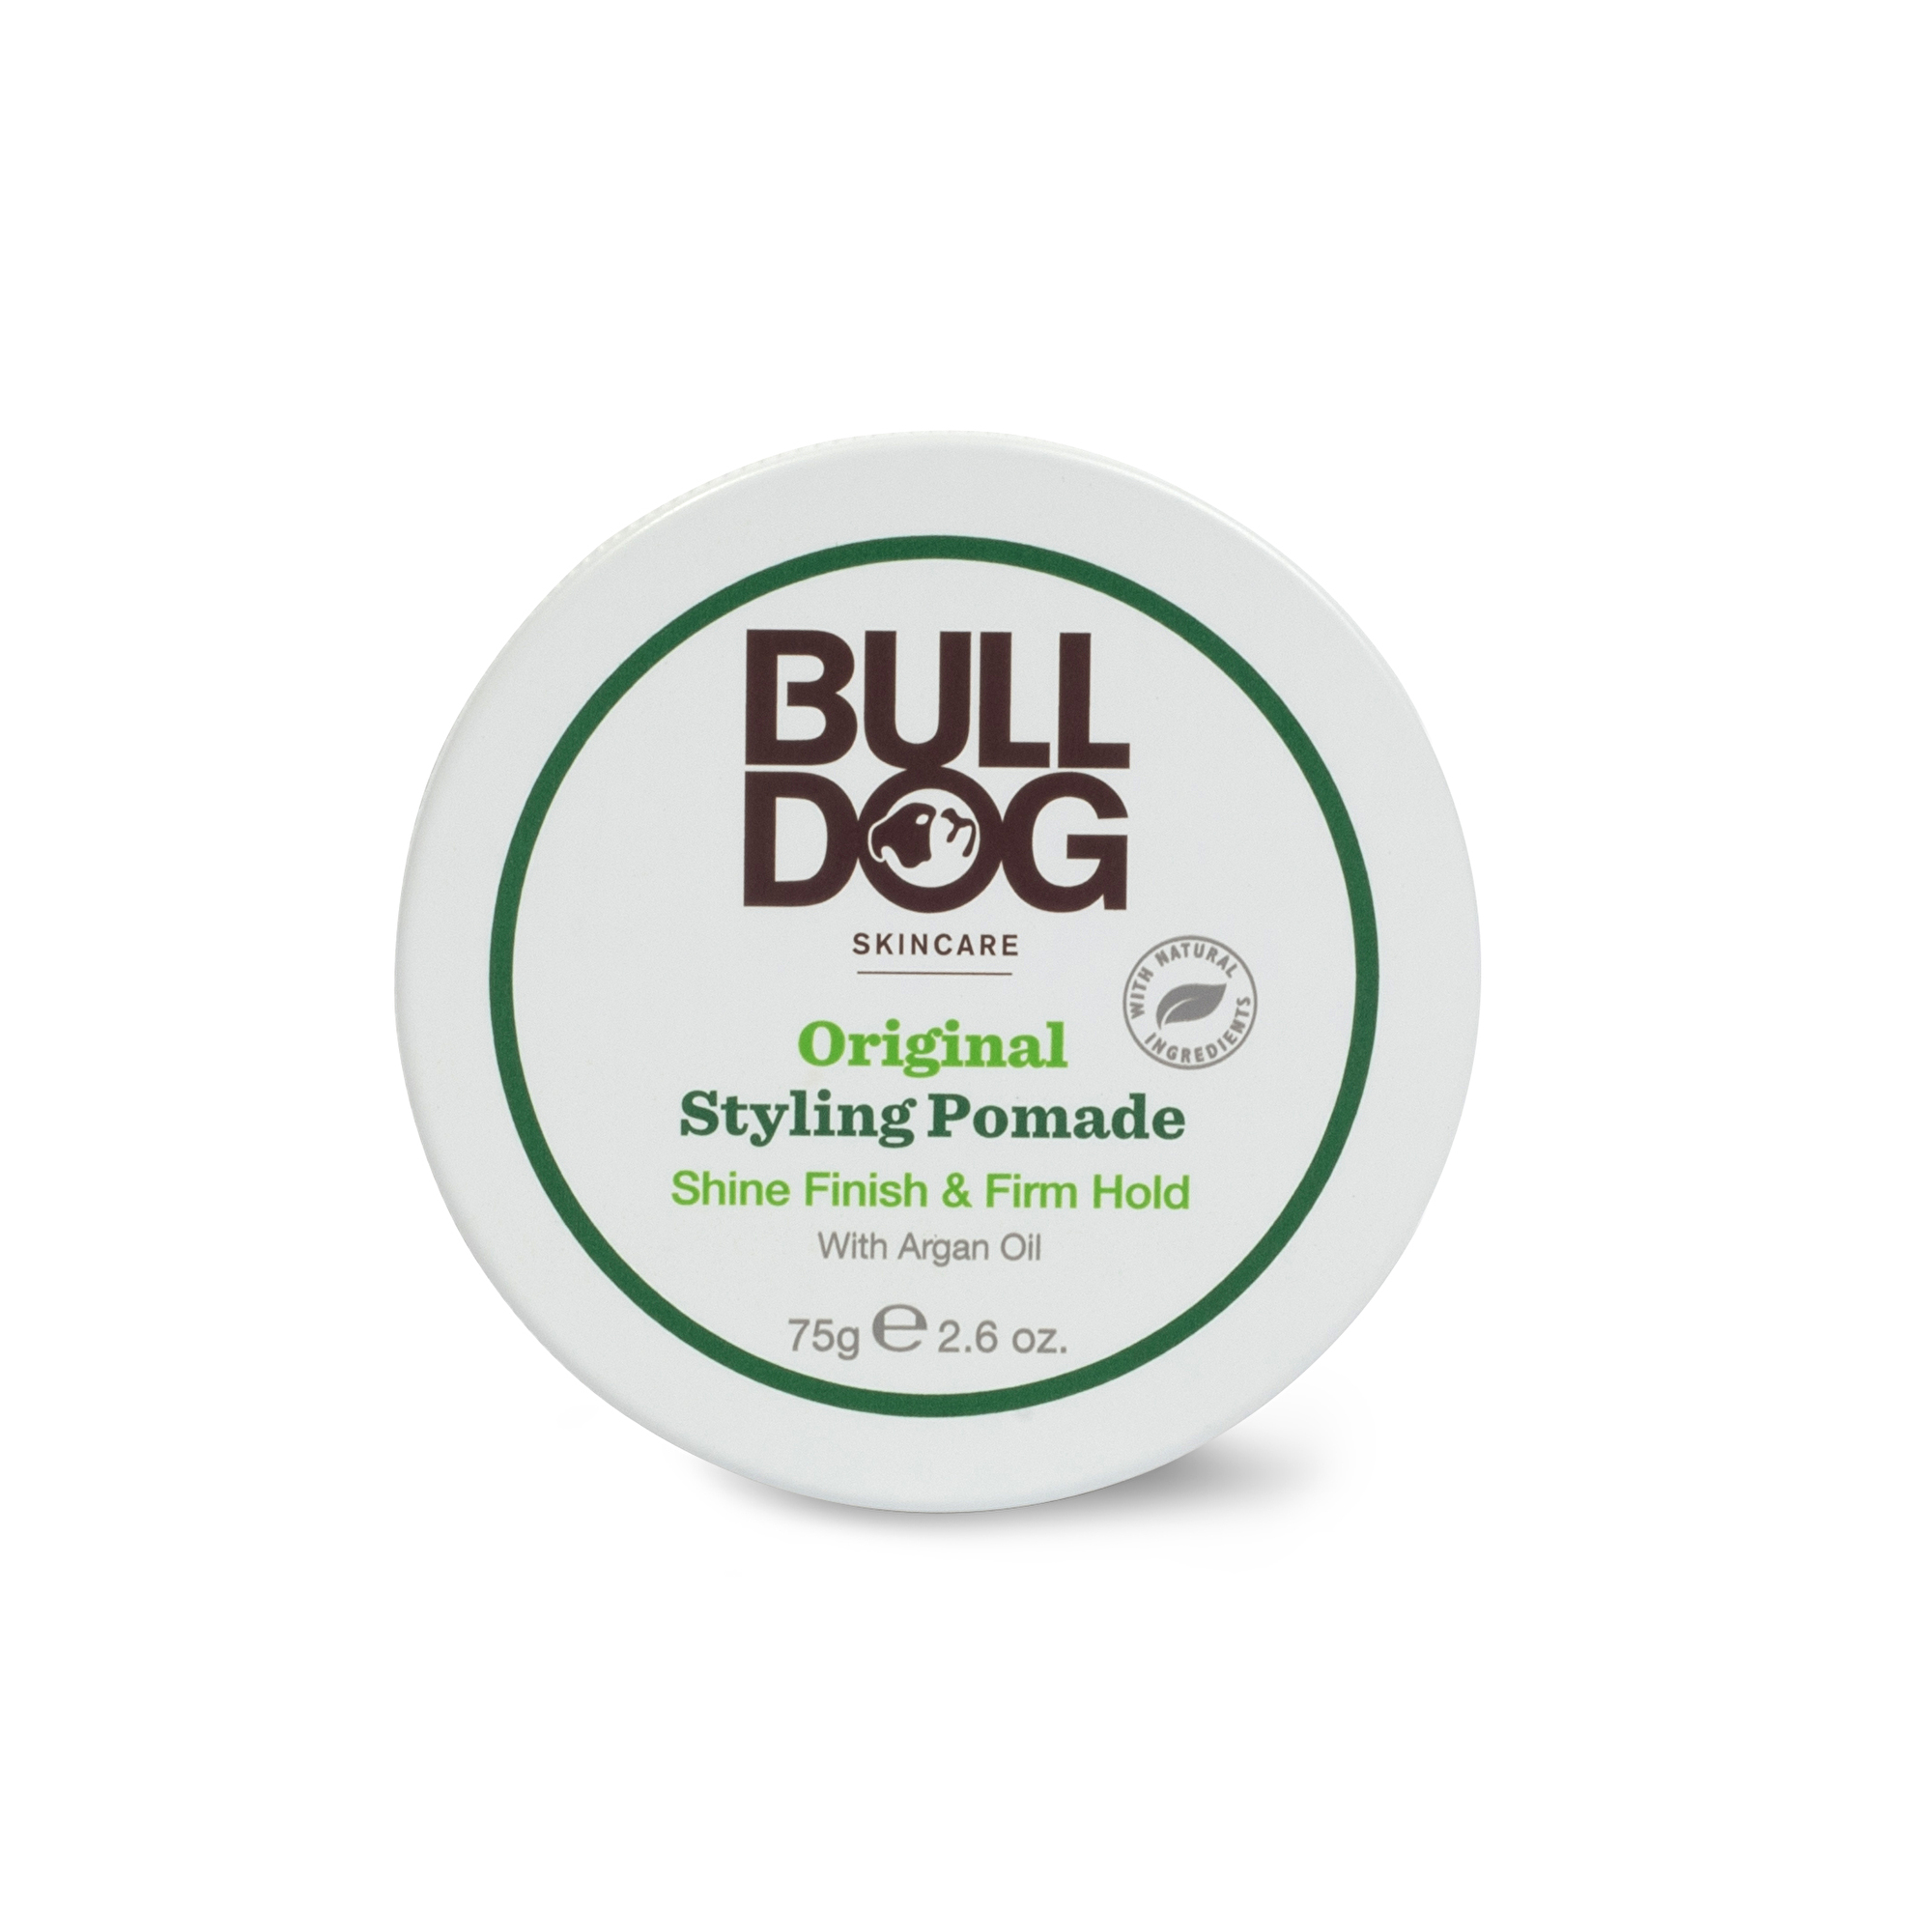 Bulldog Stylingová pomáda Original (Styling Pomade) 75 g